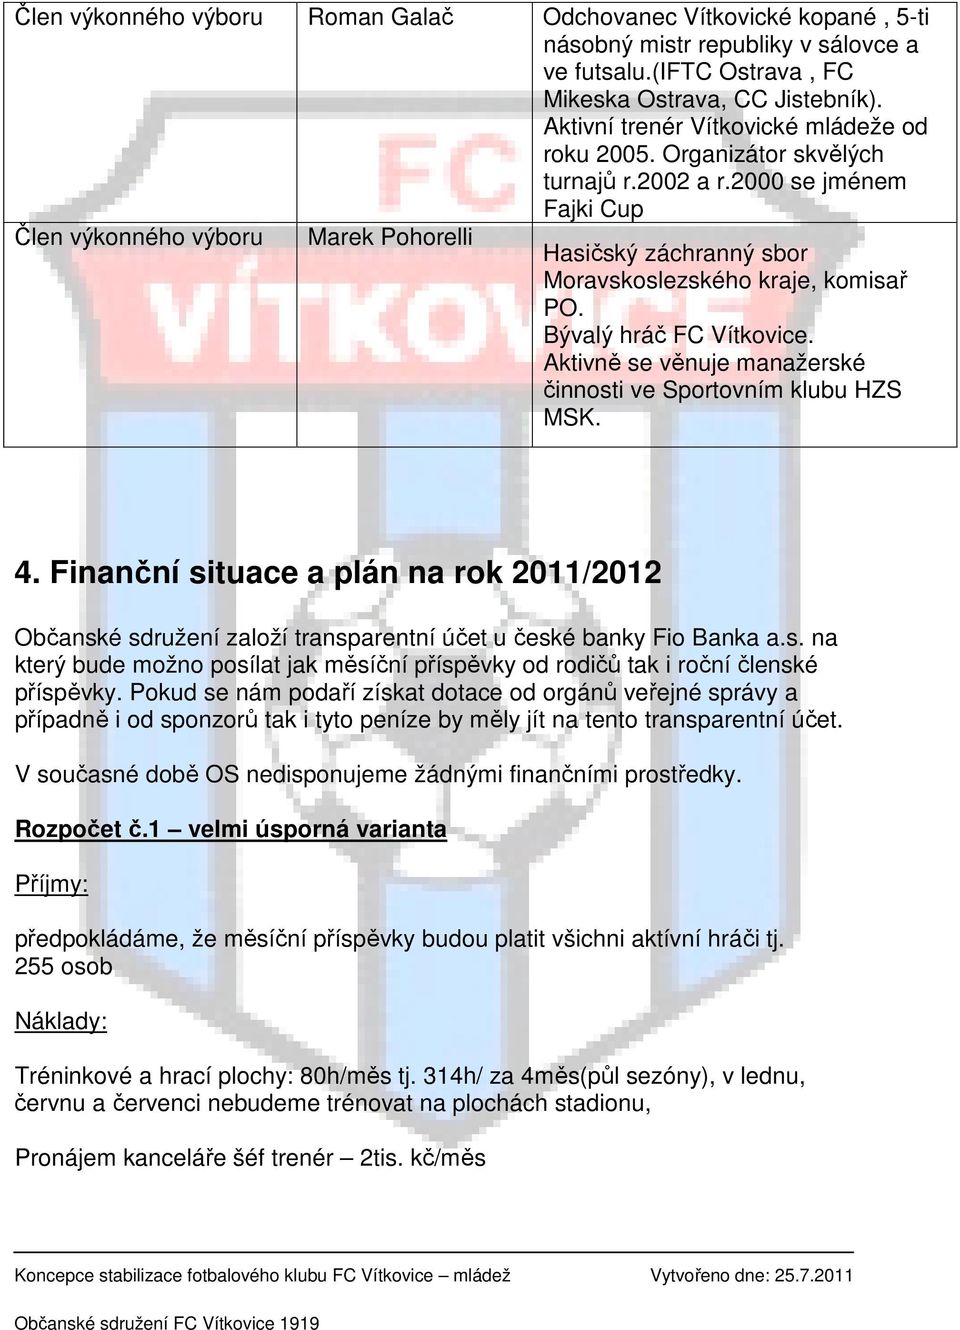 Koncepce stabilizace fotbalového klubu FC Vítkovice - mládež - PDF Stažení  zdarma